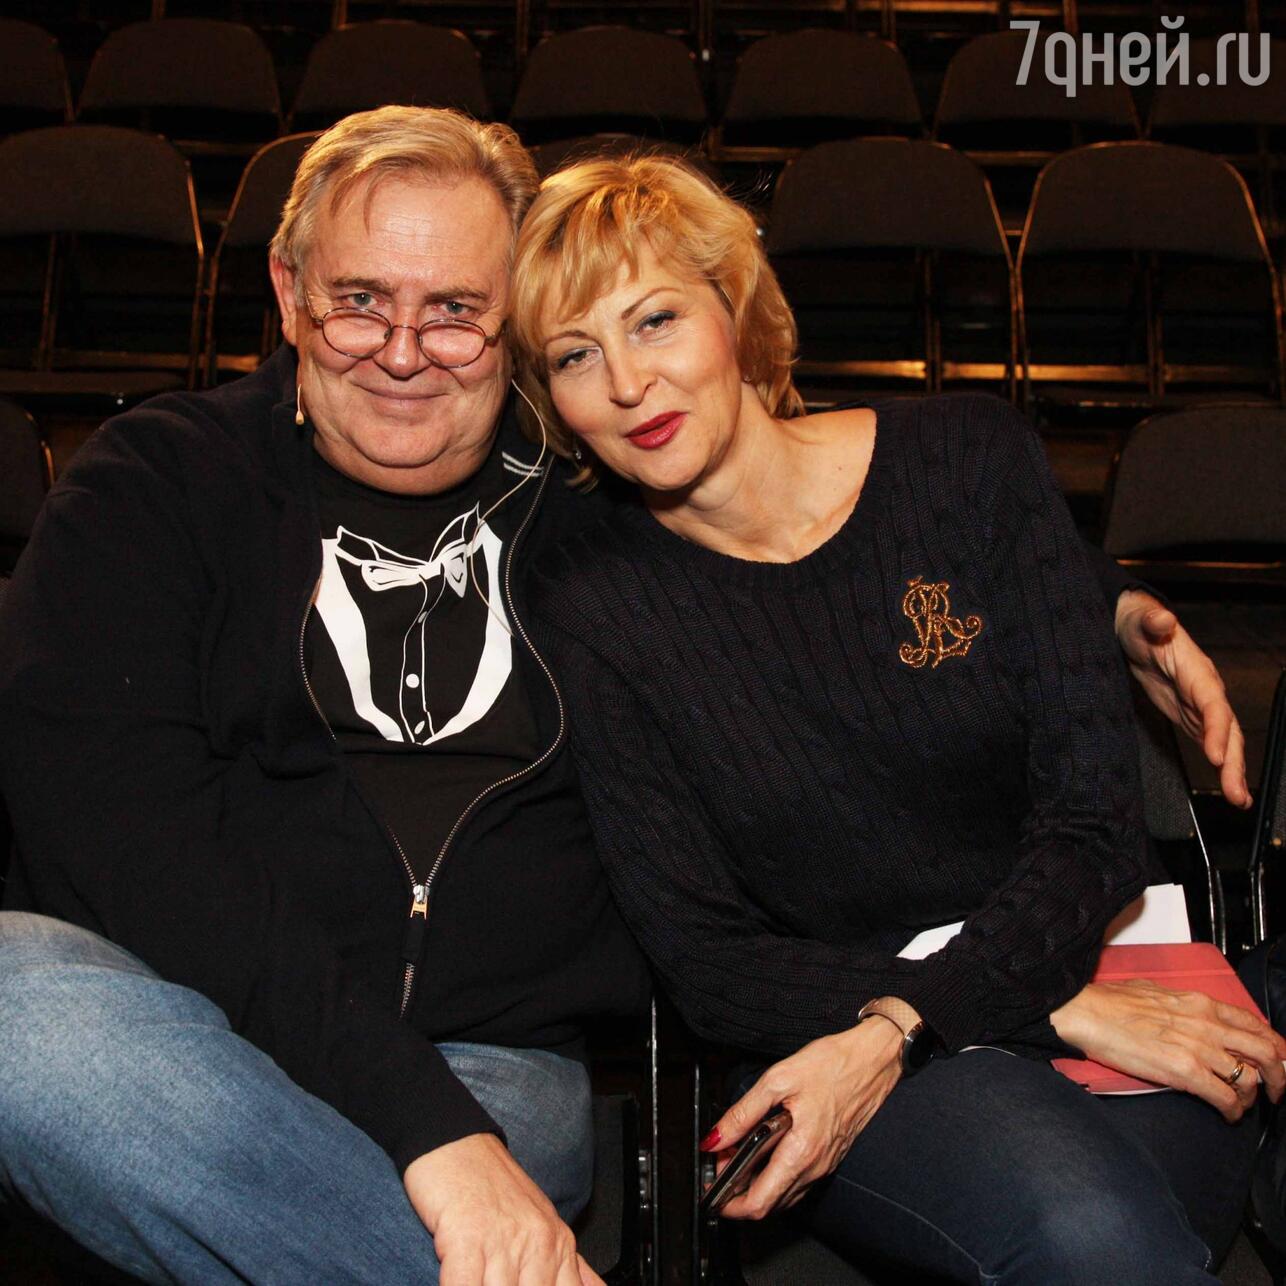 Юрий Стоянов с женой Еленой на репетиции спекталя